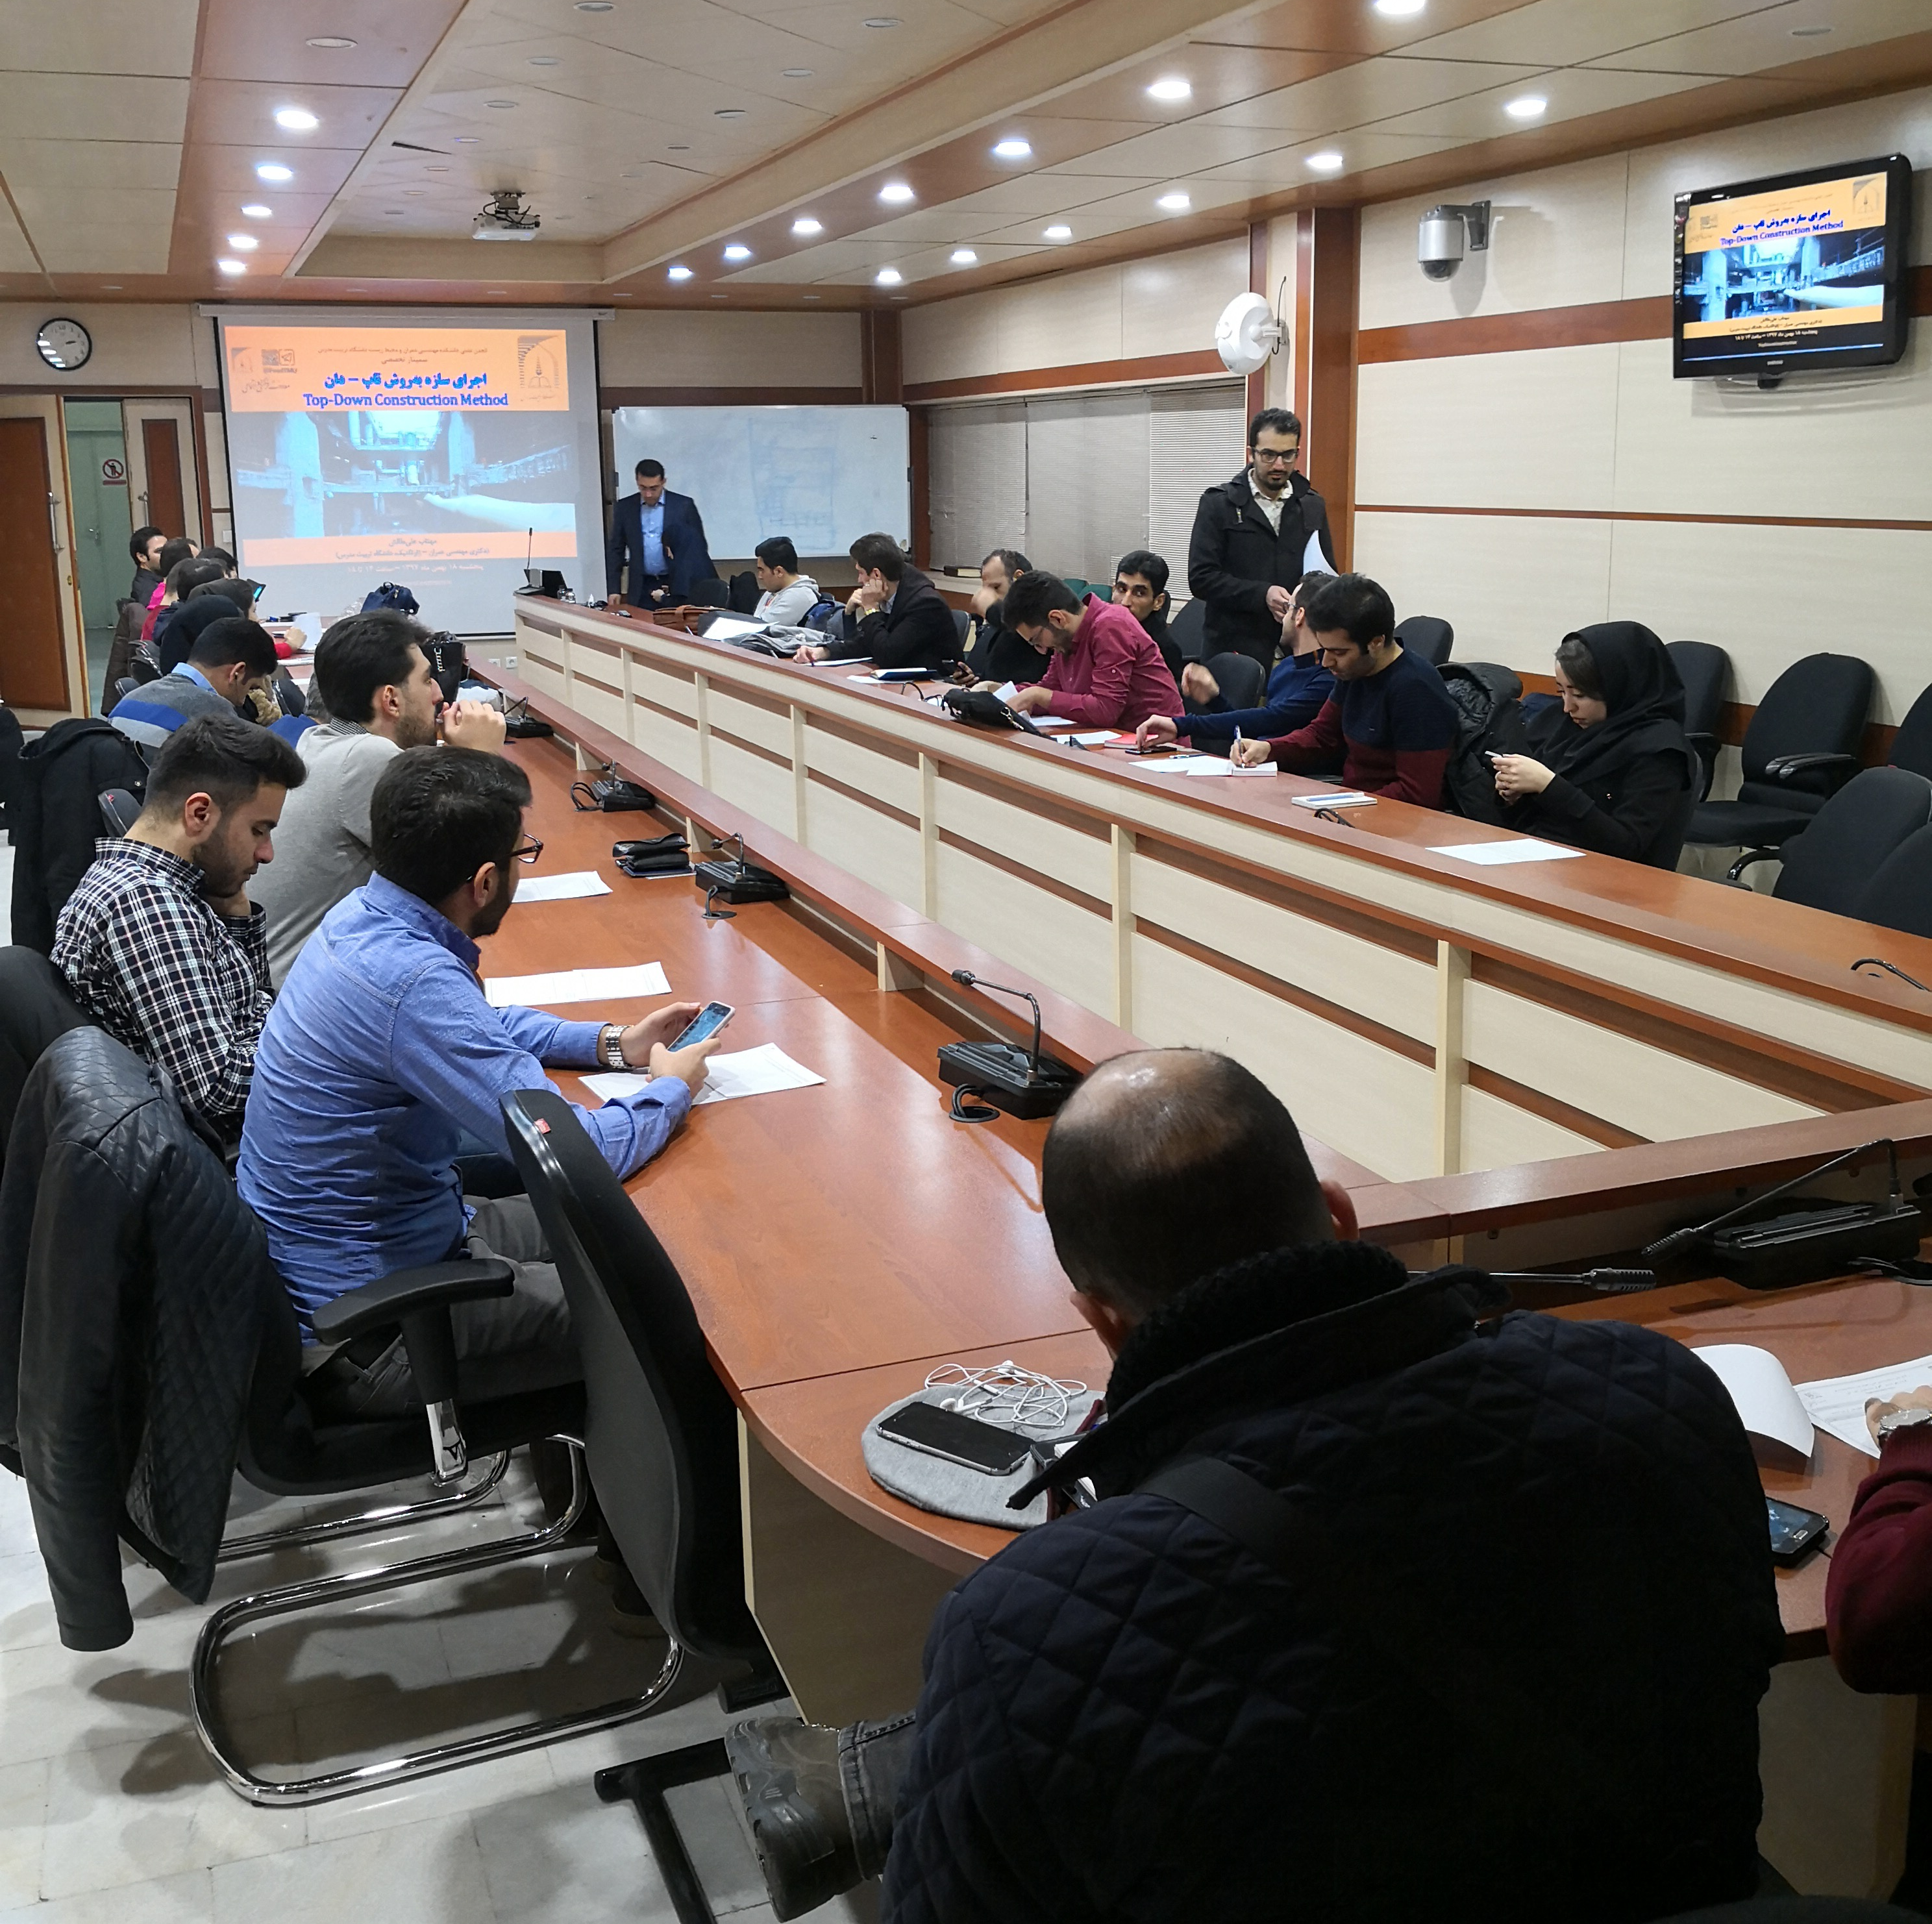 دوره های برگزار شده در شهر تهران توسط گروه مهندسی ساحل پاک